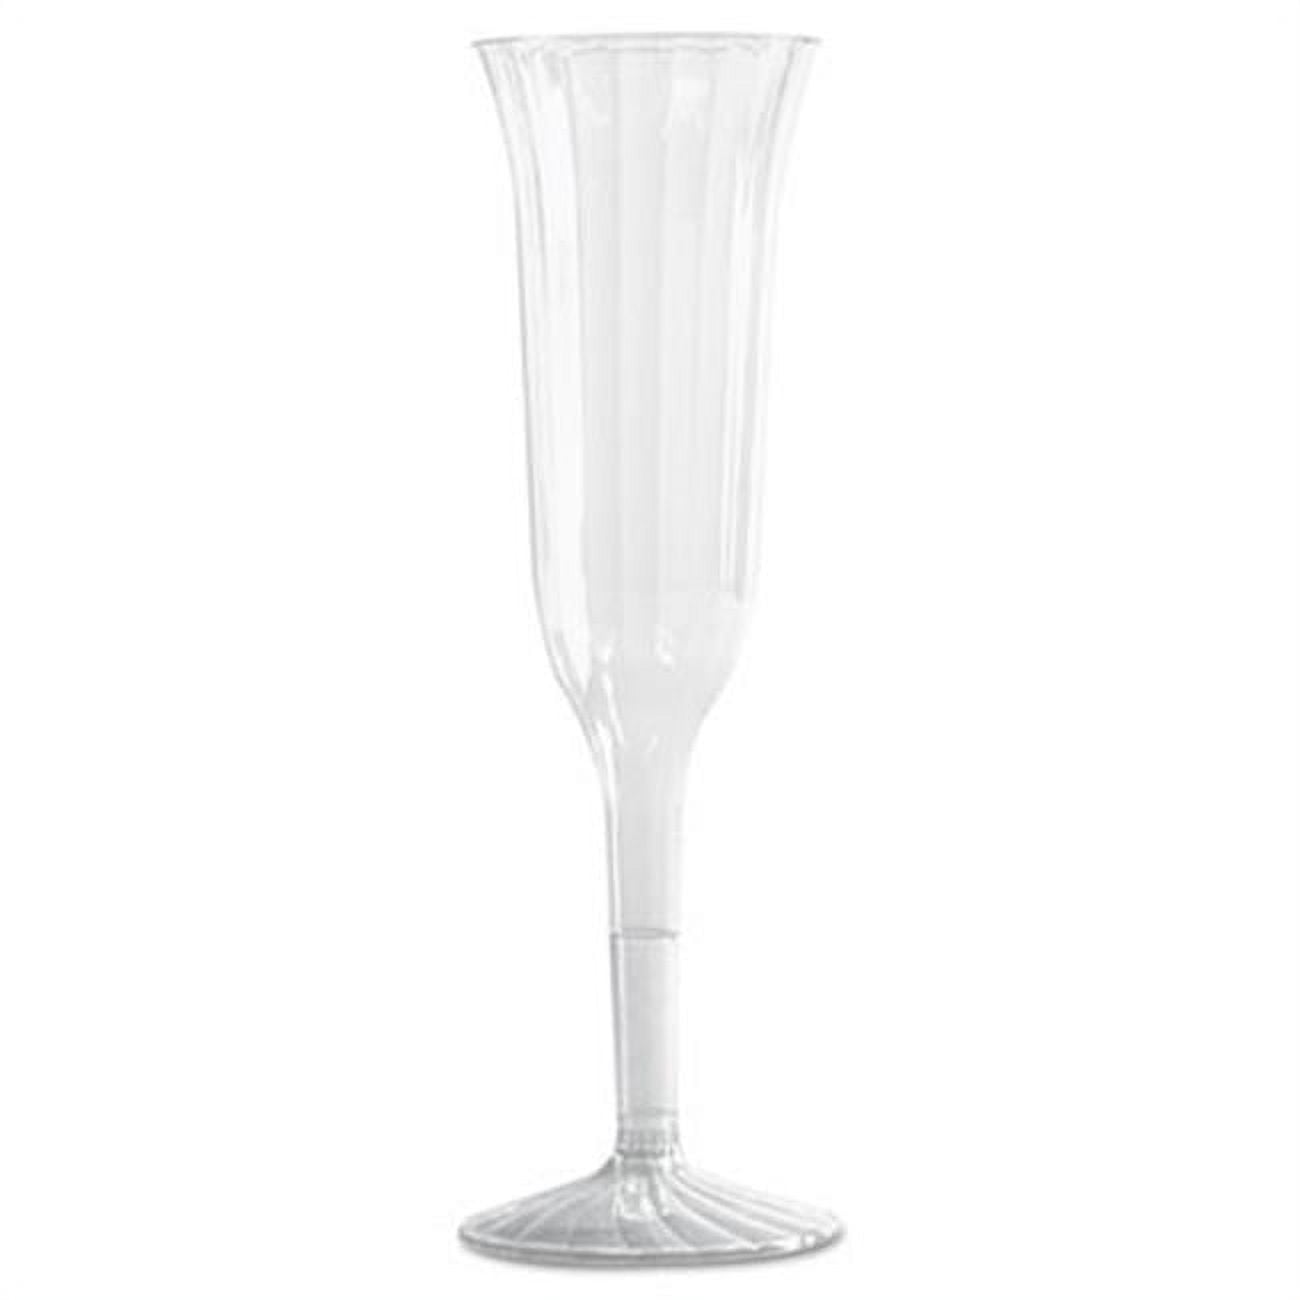 Flute Champagne Plastique Cristal 14cl-10